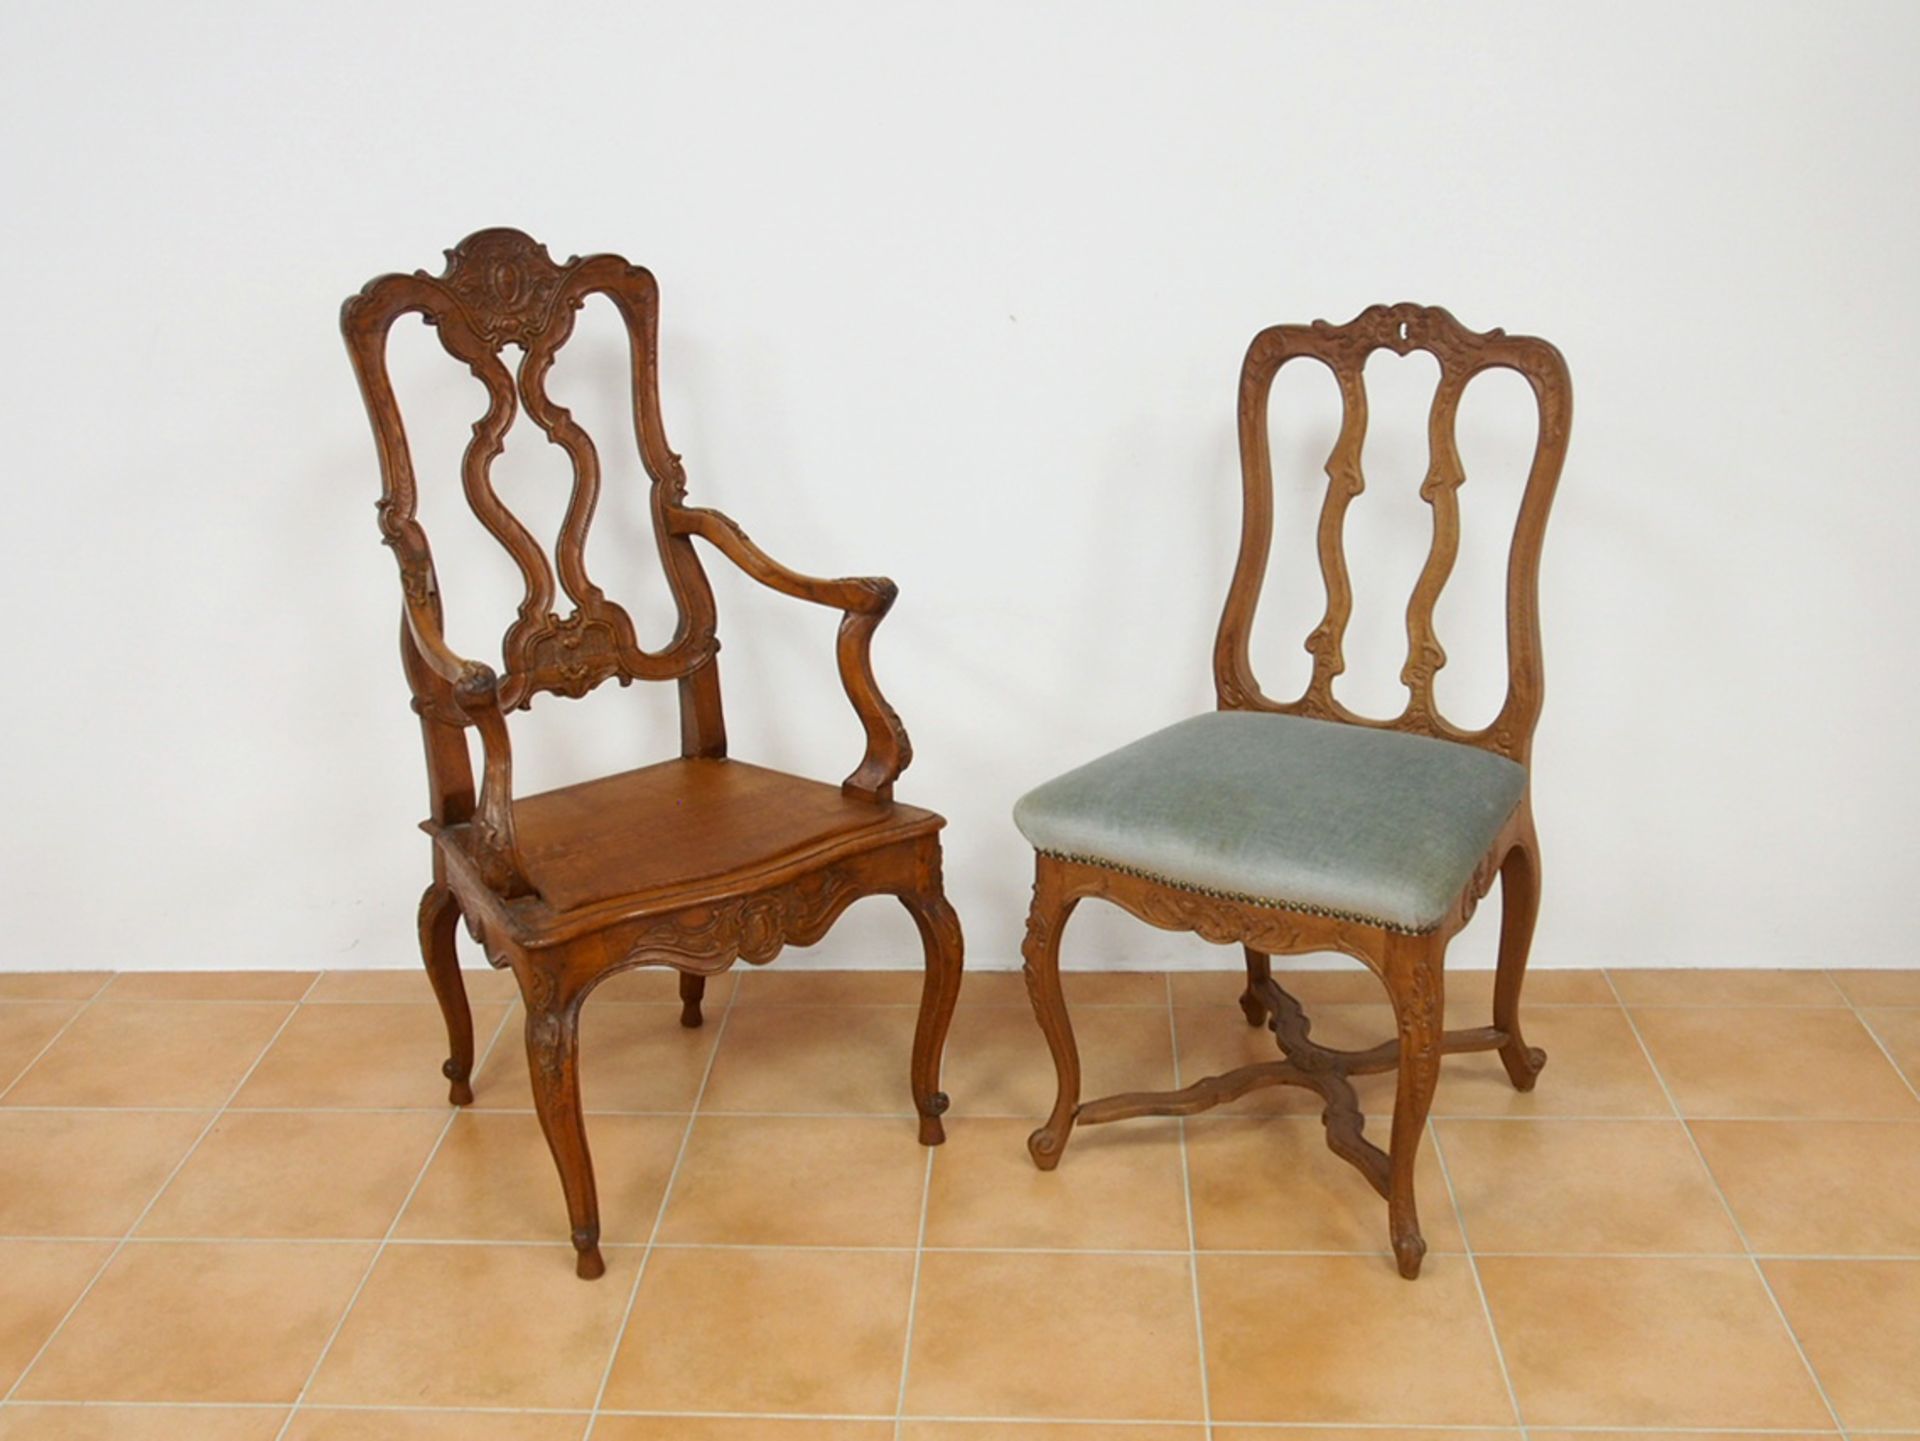 Tisch, zwei Stühle, ein Armlehnstuhl - Bild 3 aus 3